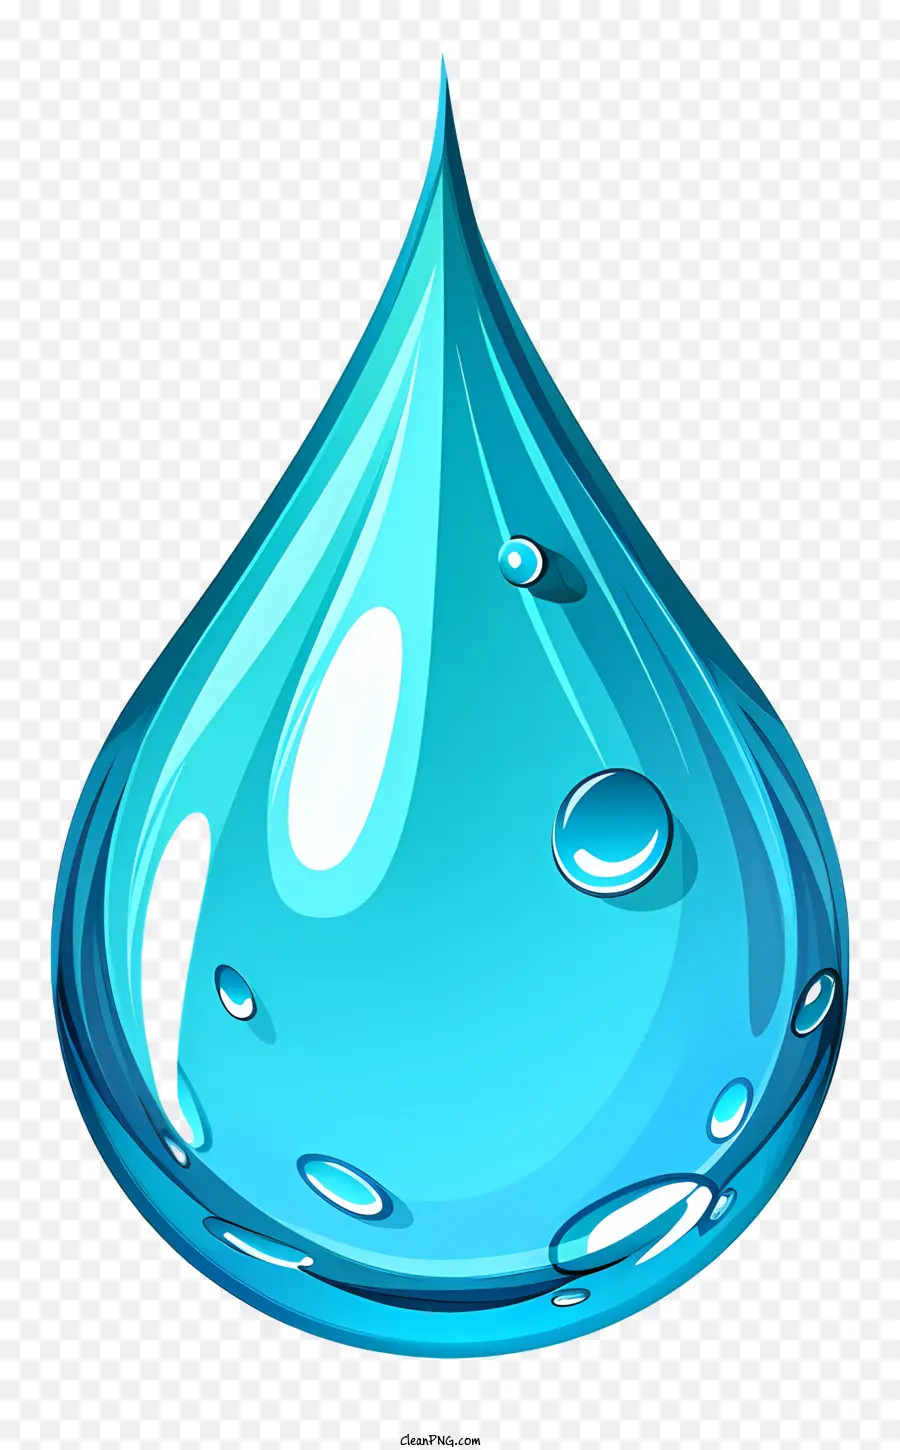 Wassertropfen - Nahaufnahme des klaren, glänzenden blauen Wassertropfens